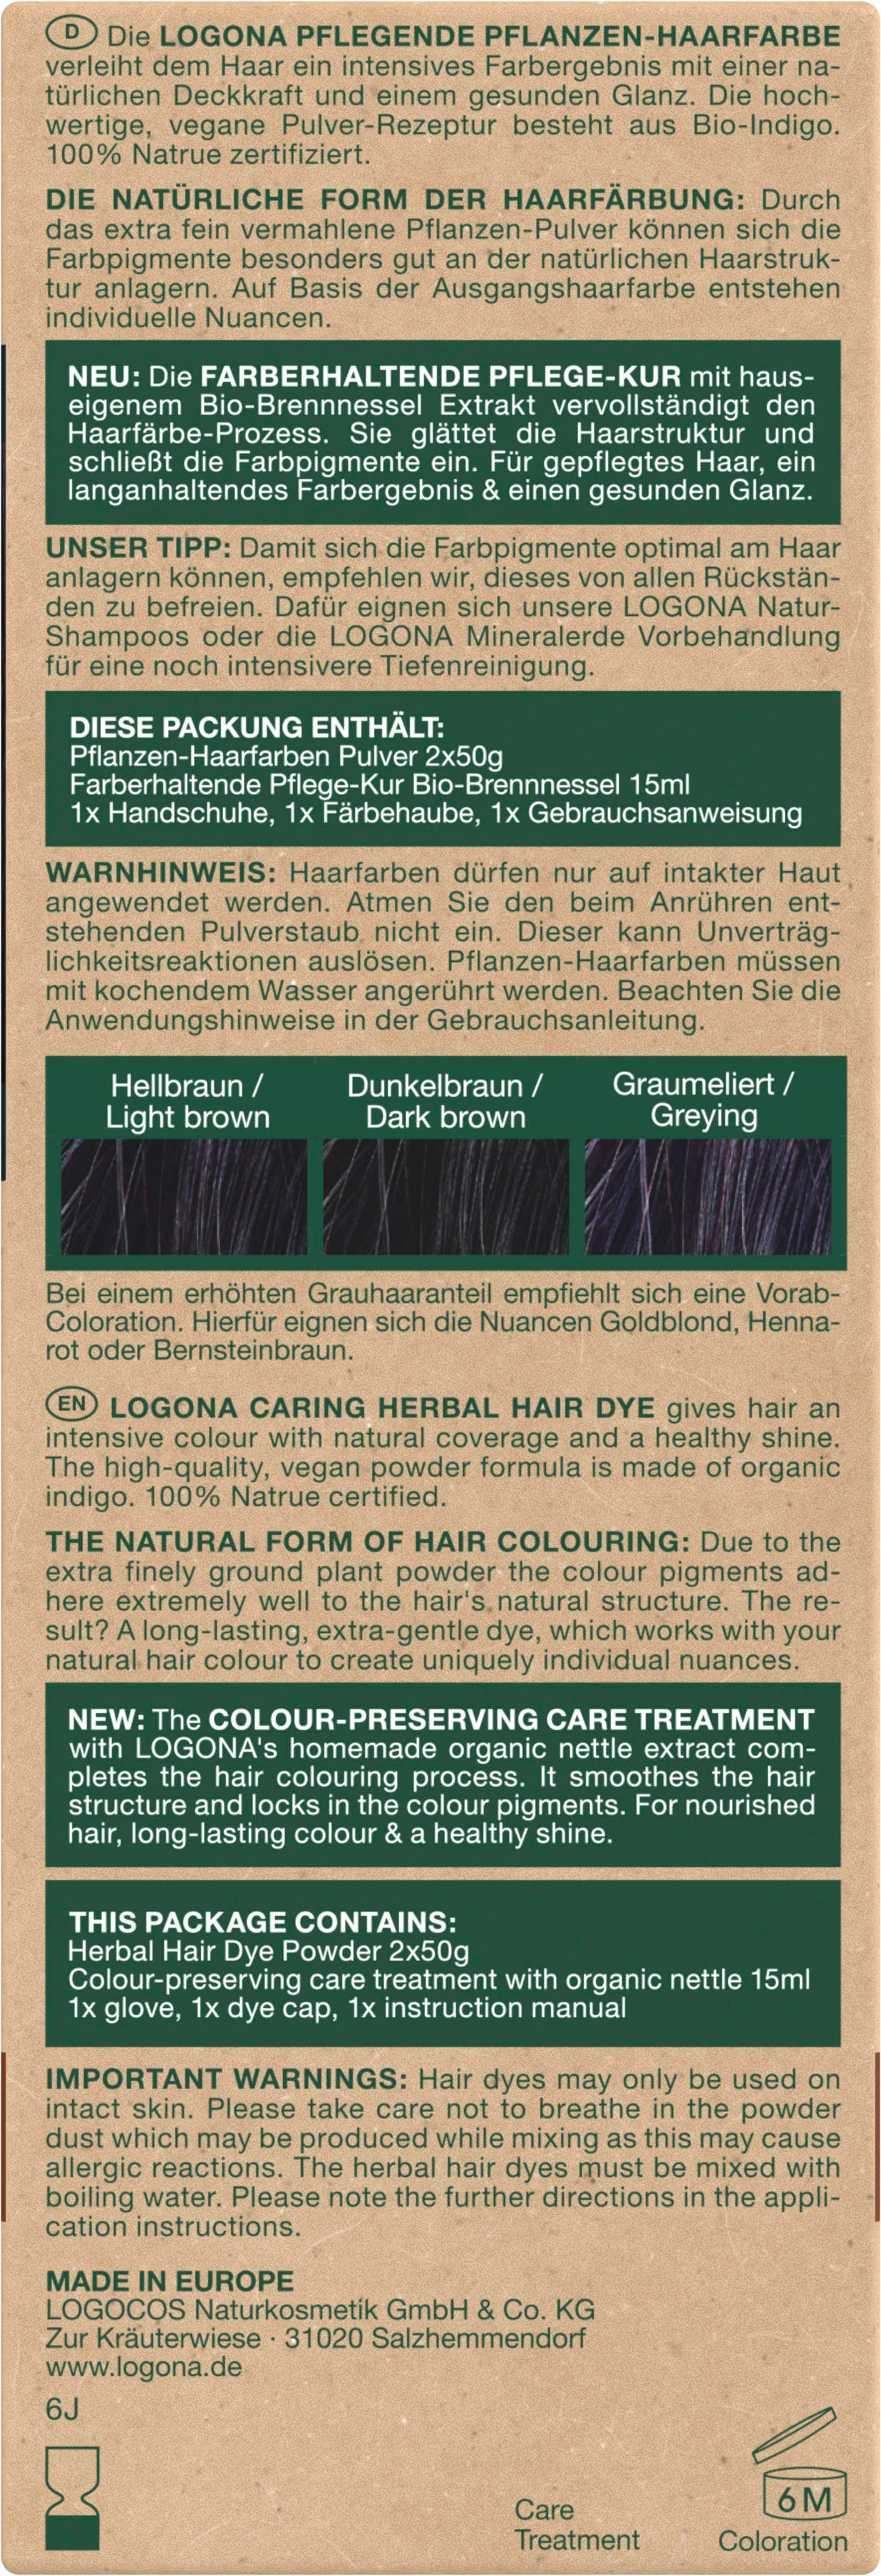 Pflanzen-Haarfarbe Indigoschwarz LOGONA 12 Haarfarbe Pulver